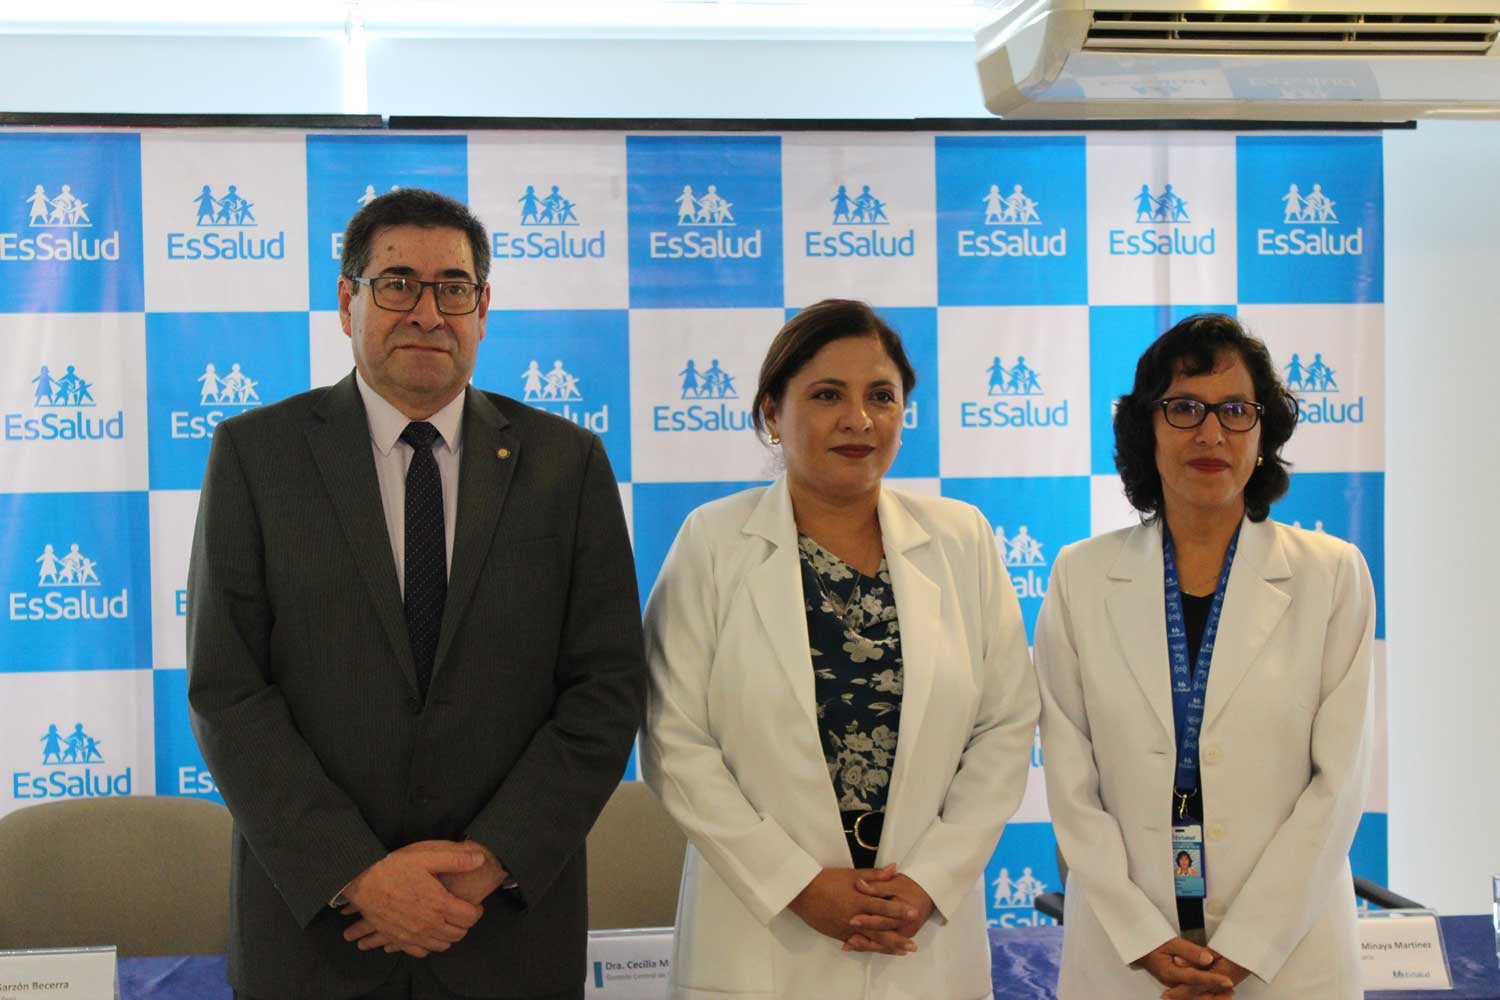 Dr. Carlos Roberto Garzón, Representante de la OPS/OMS Perú; Dra. Cecilia Bedoya, gerente central de prestraciones de salud de EsSalud; y Dra. Gabriela Minaya, gerente de medicina complementaria de EsSalud